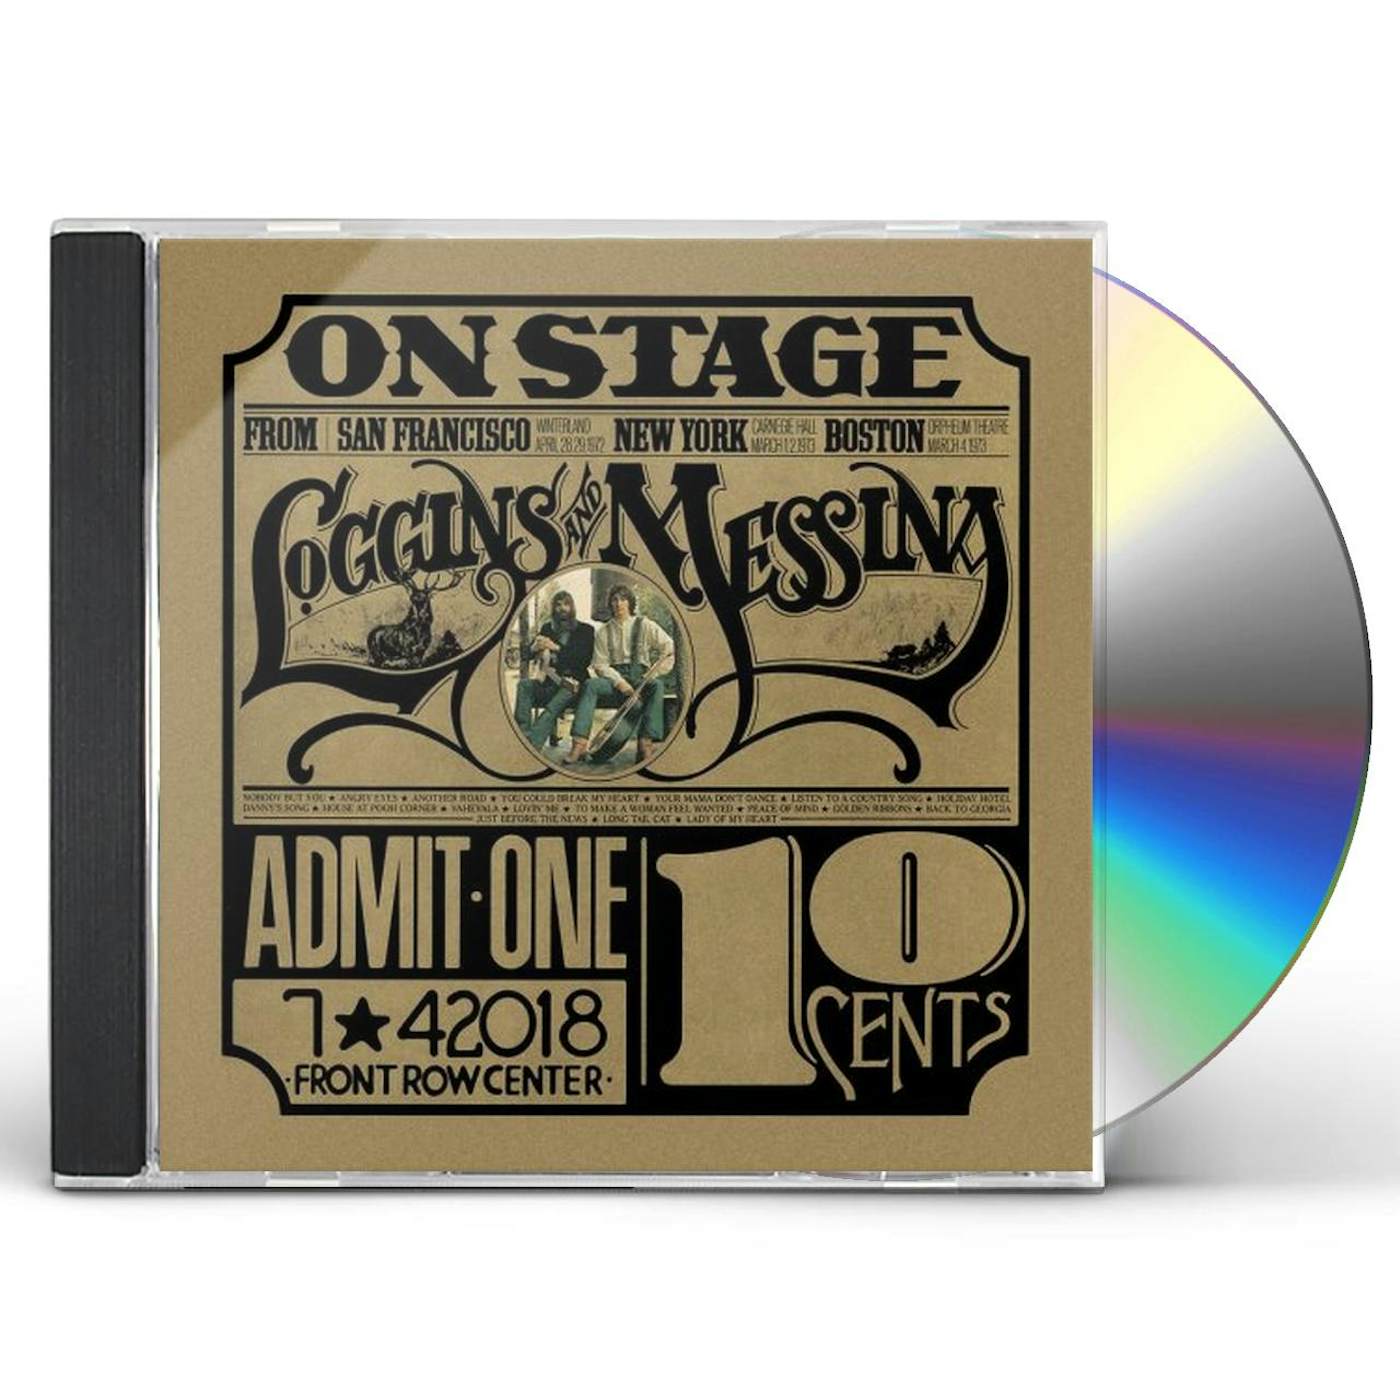 Loggins & Messina ON STAGE CD